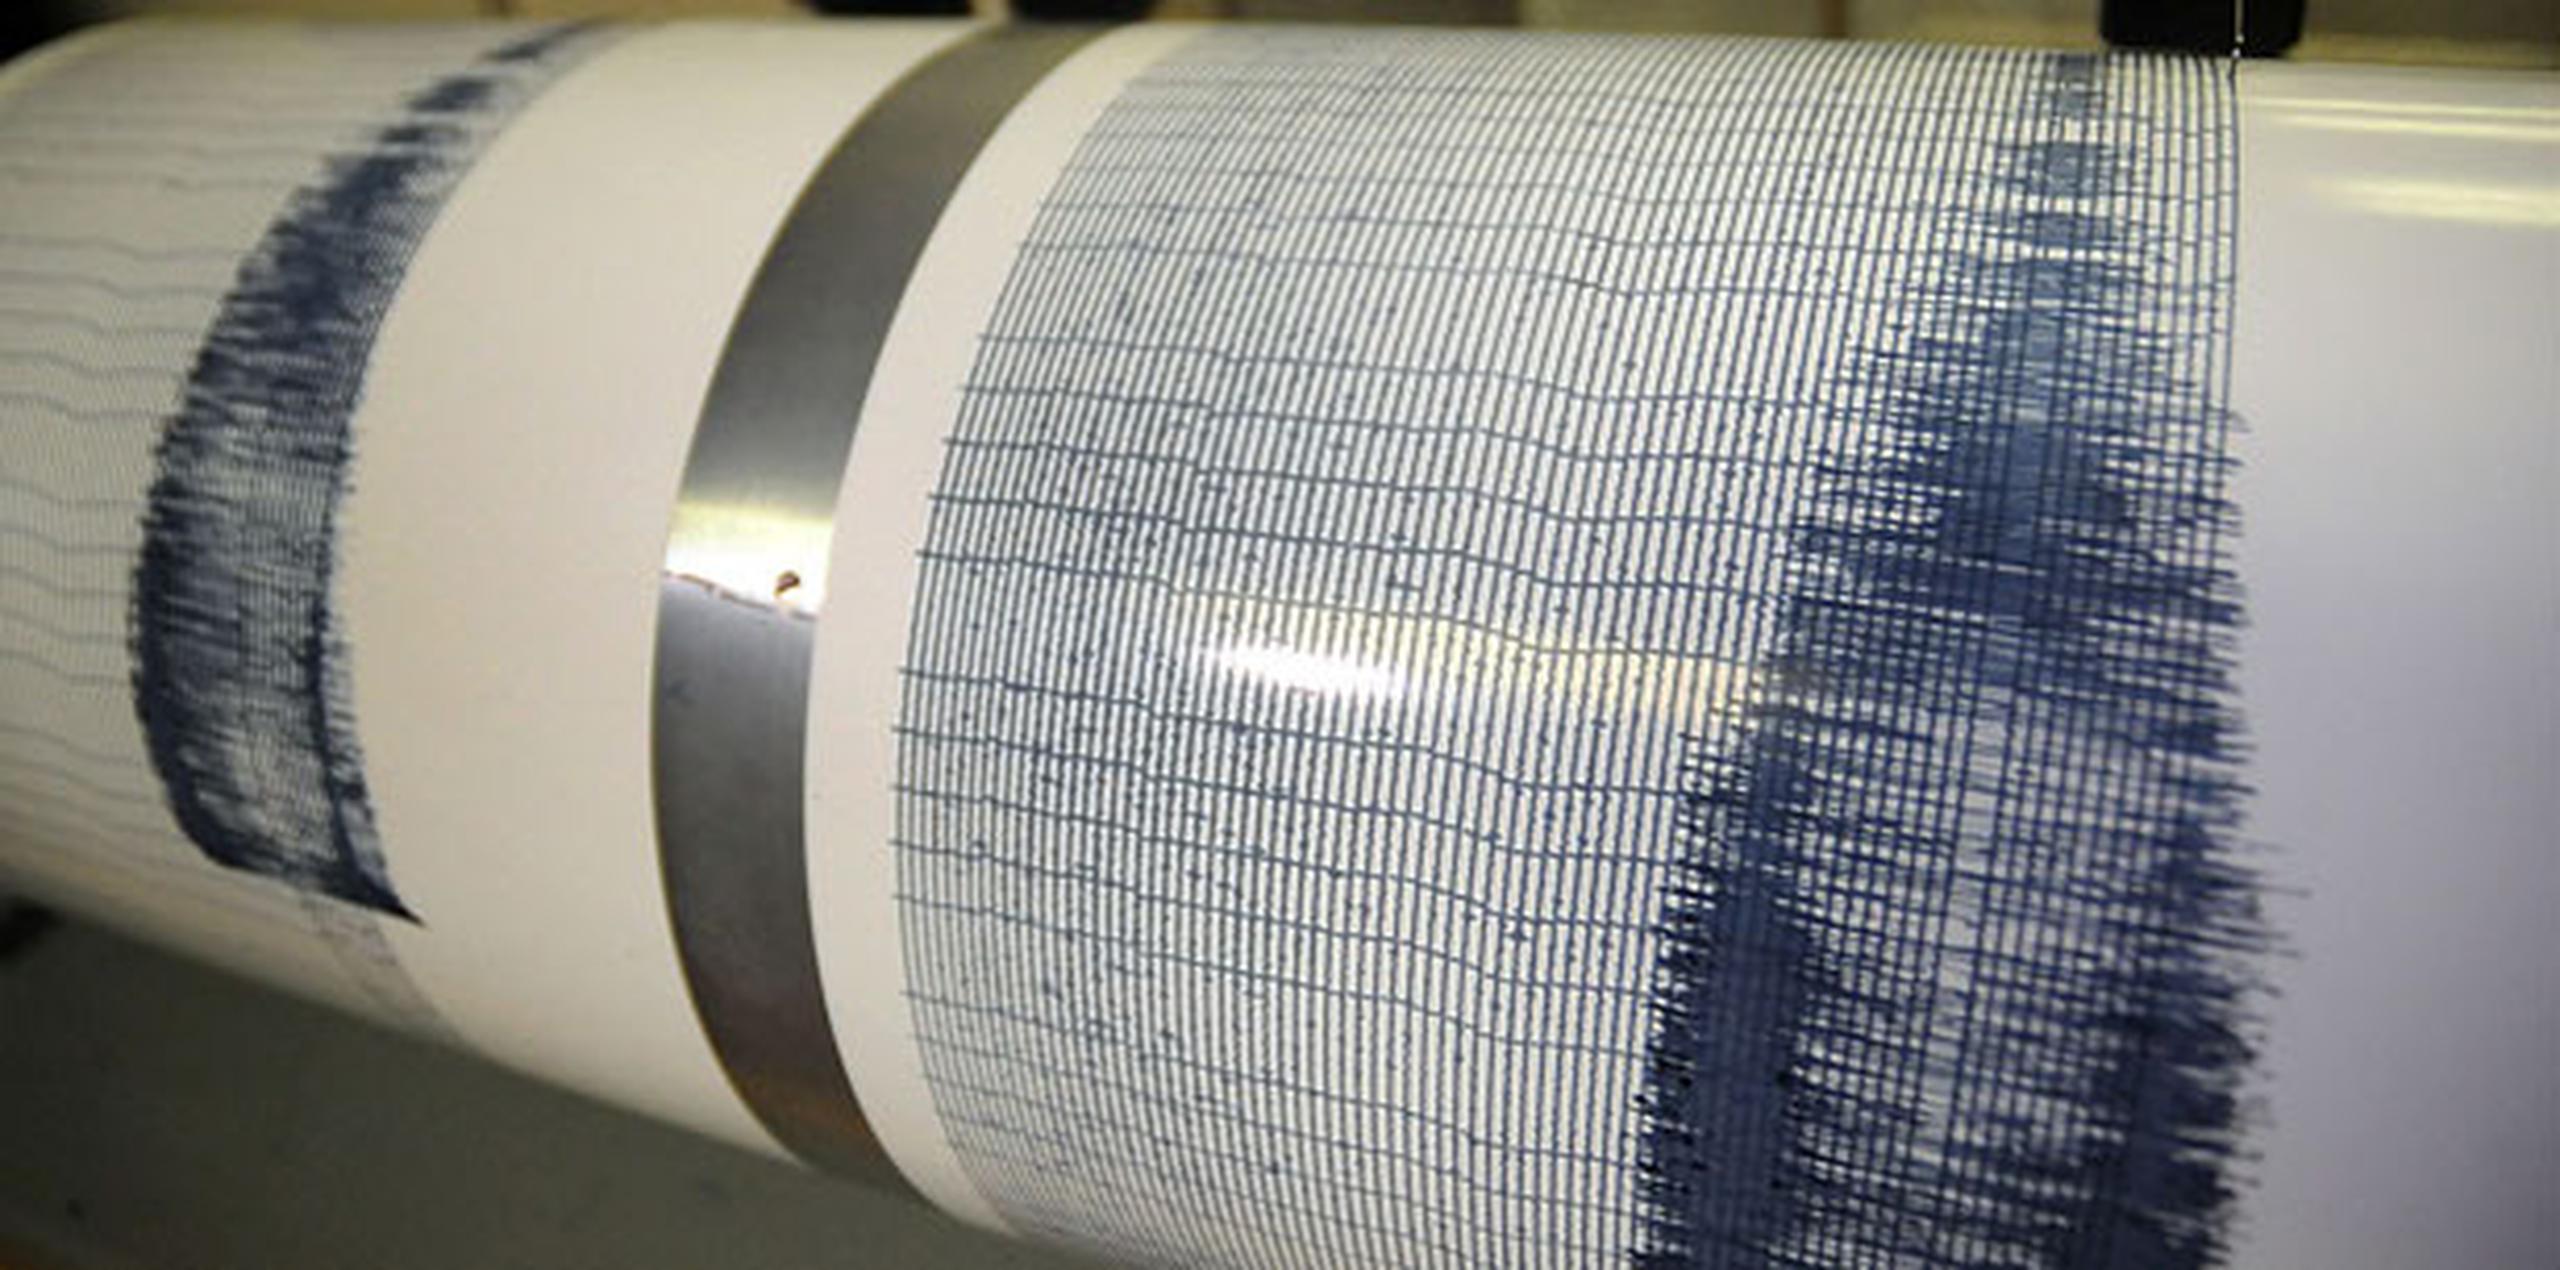 El sismo de mayor magnitud alcanzó una magnitud 5.5 en la escala de Richter el viernes. (Archivo)